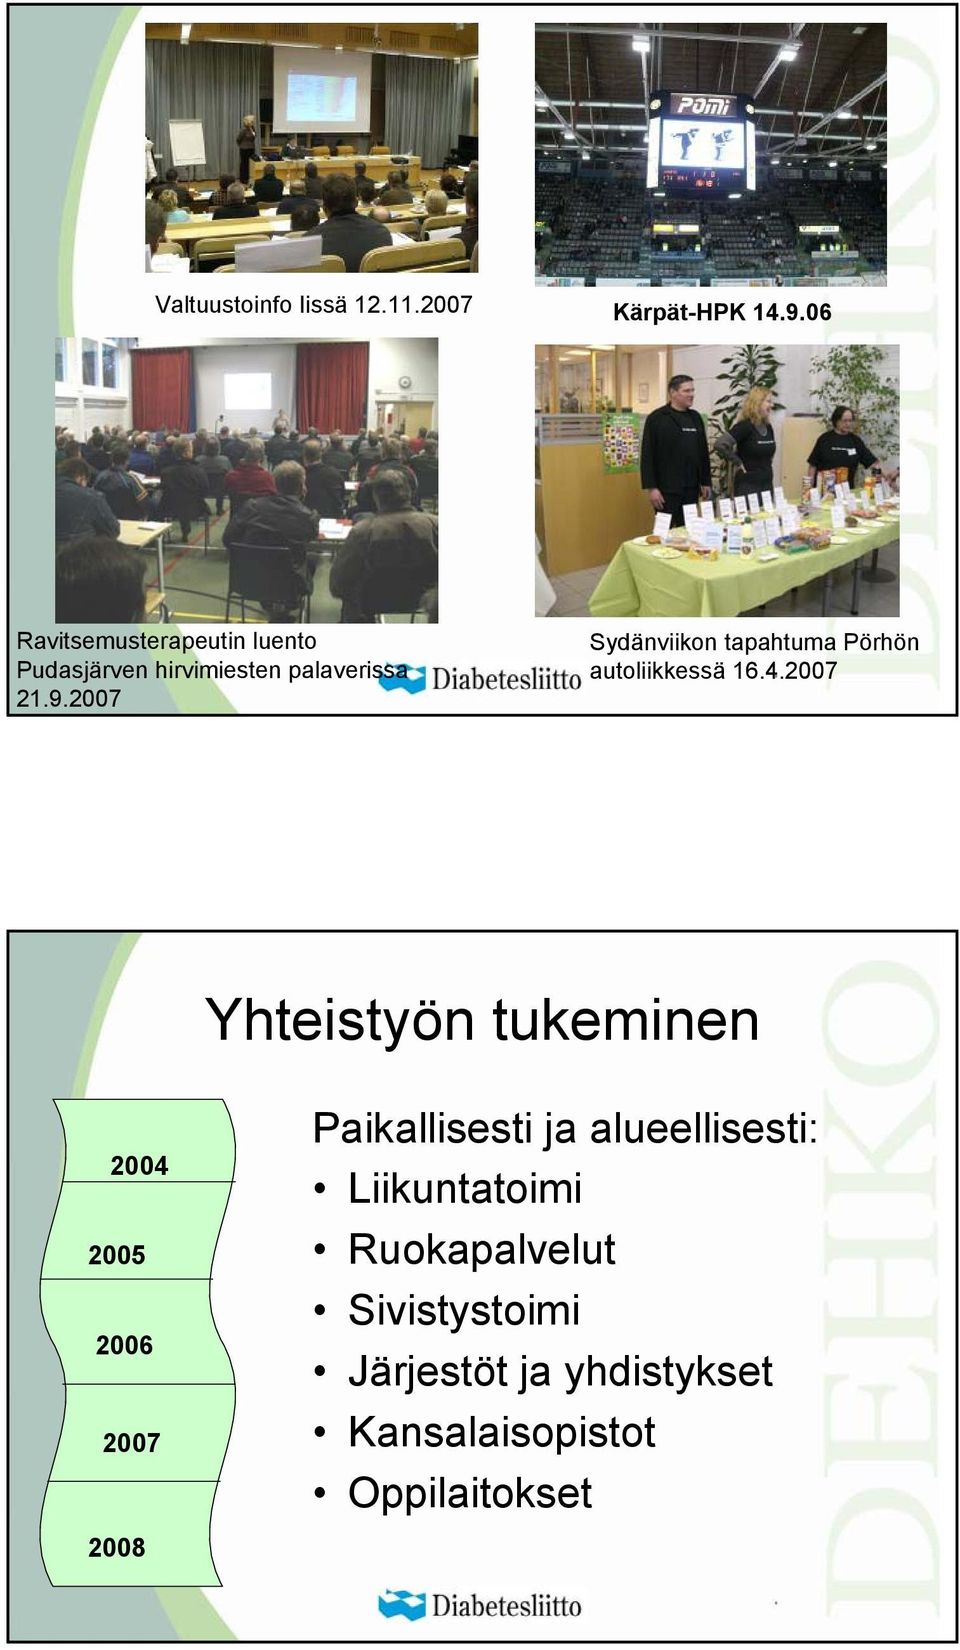 2007 Sydänviikon tapahtuma Pörhön autoliikkessä 16.4.